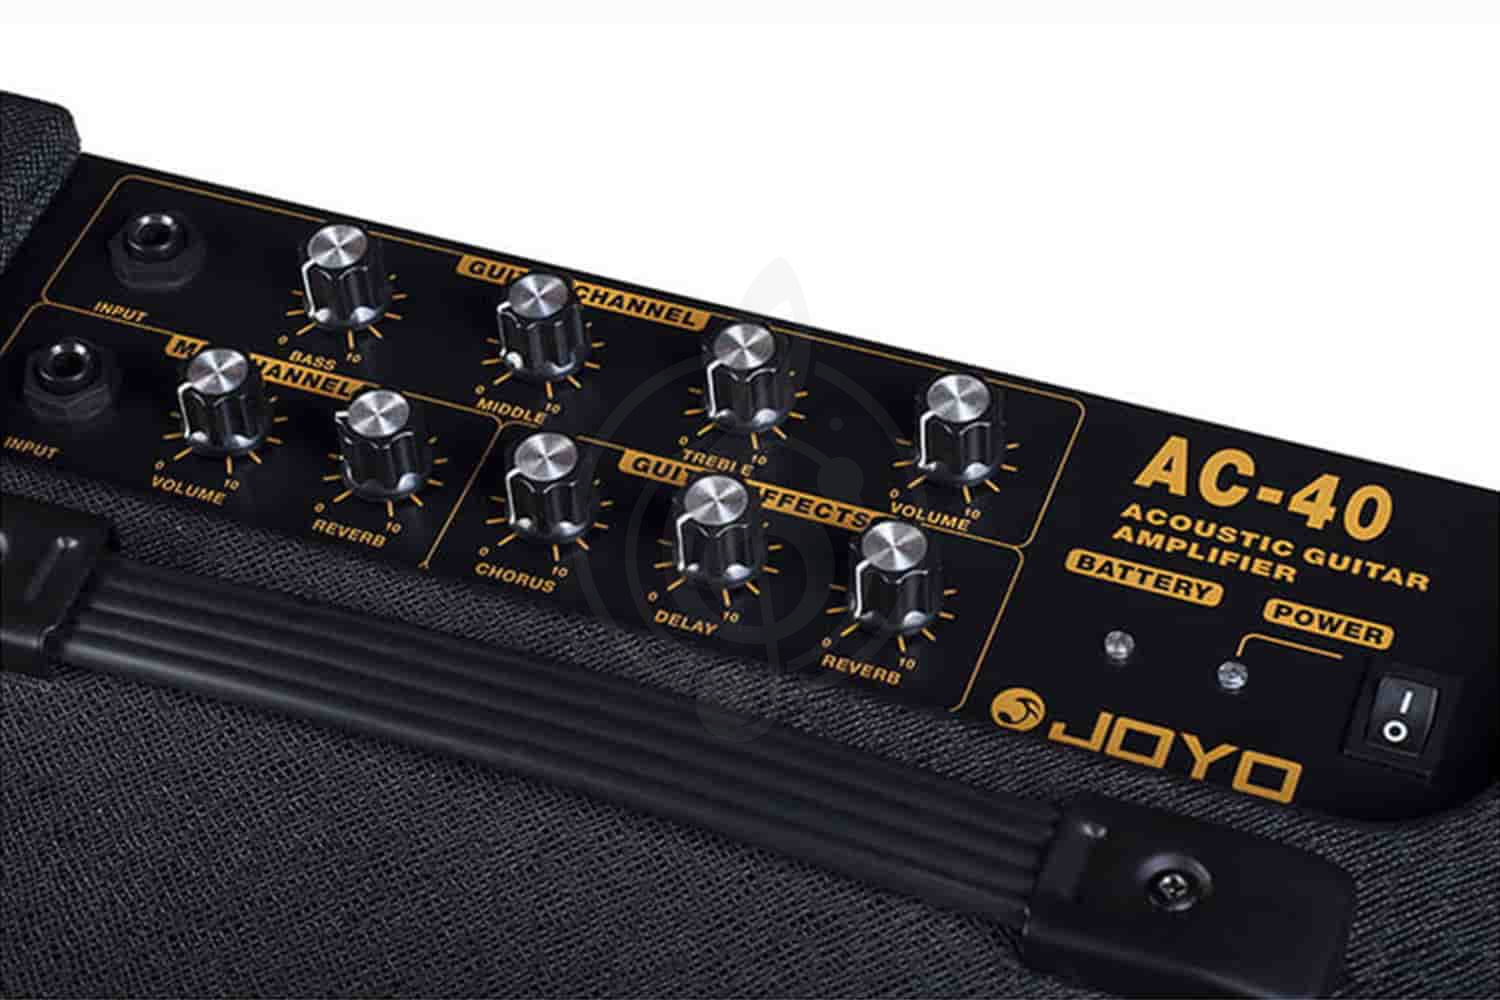 Комбоусилитель для акустической гитары Усилители и комбики для акустических гитар JOYO Joyo AC-40 - Комбоусилитель для акустической гитары AC-40 - фото 2